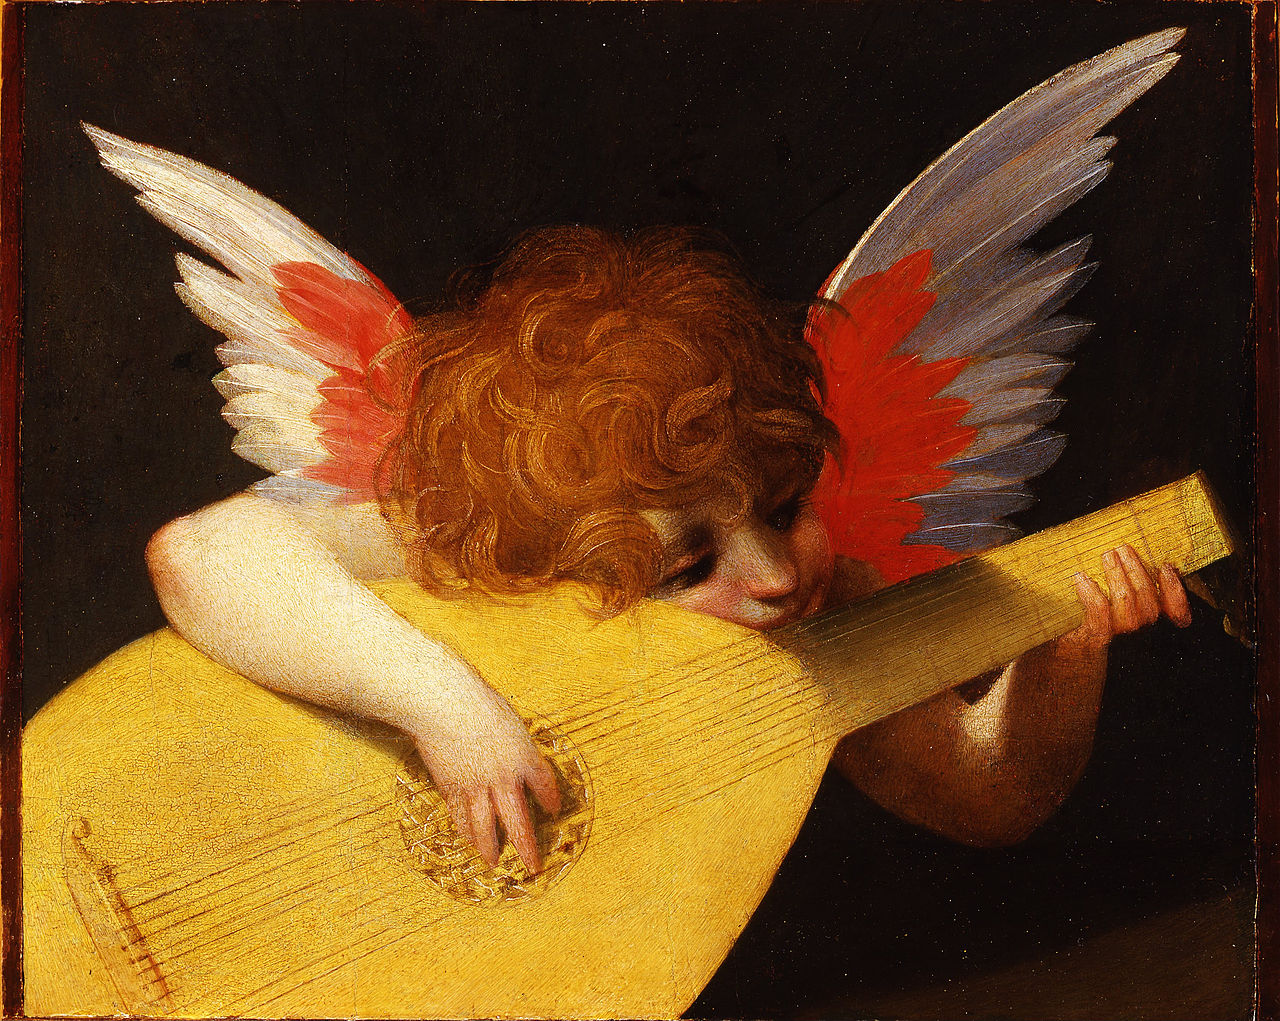 Ángel Musical by Rosso Fiorentino - 1522 Galleria degli Uffizi